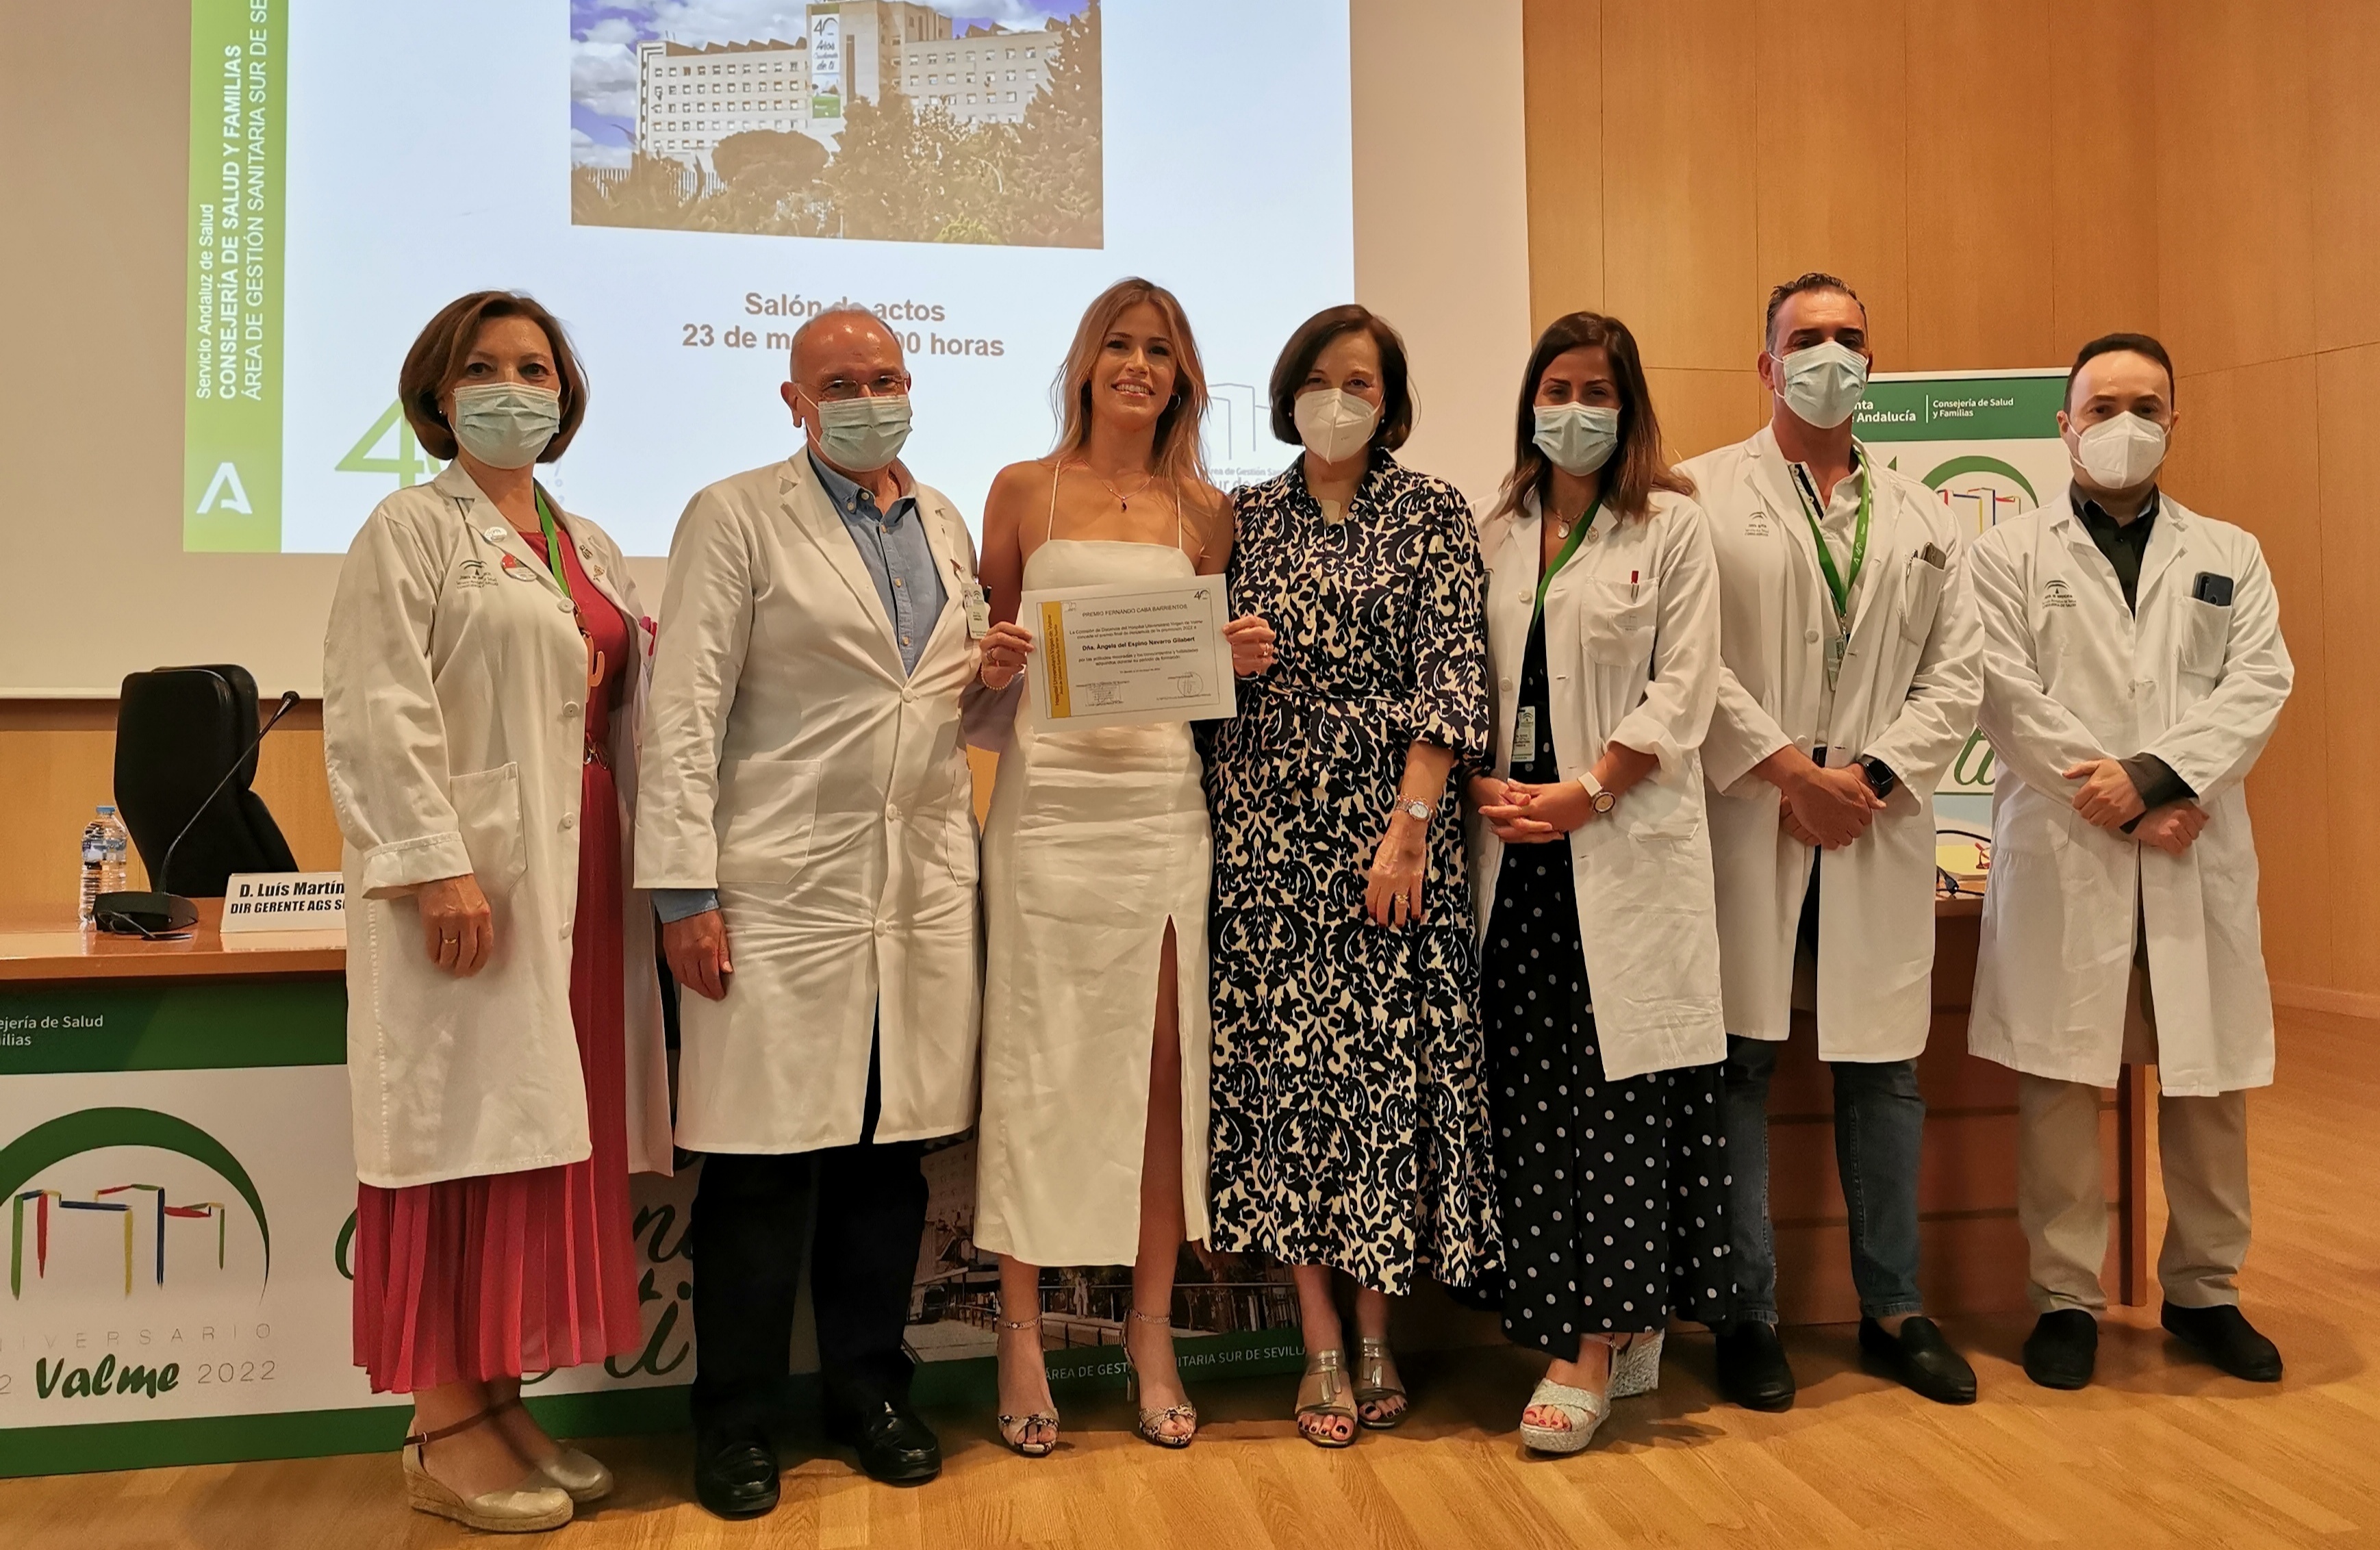 El Hospital de Valme entrega el Premio al Mejor Residente 2022 durante el acto de despedida de la promoción que culmina su formación